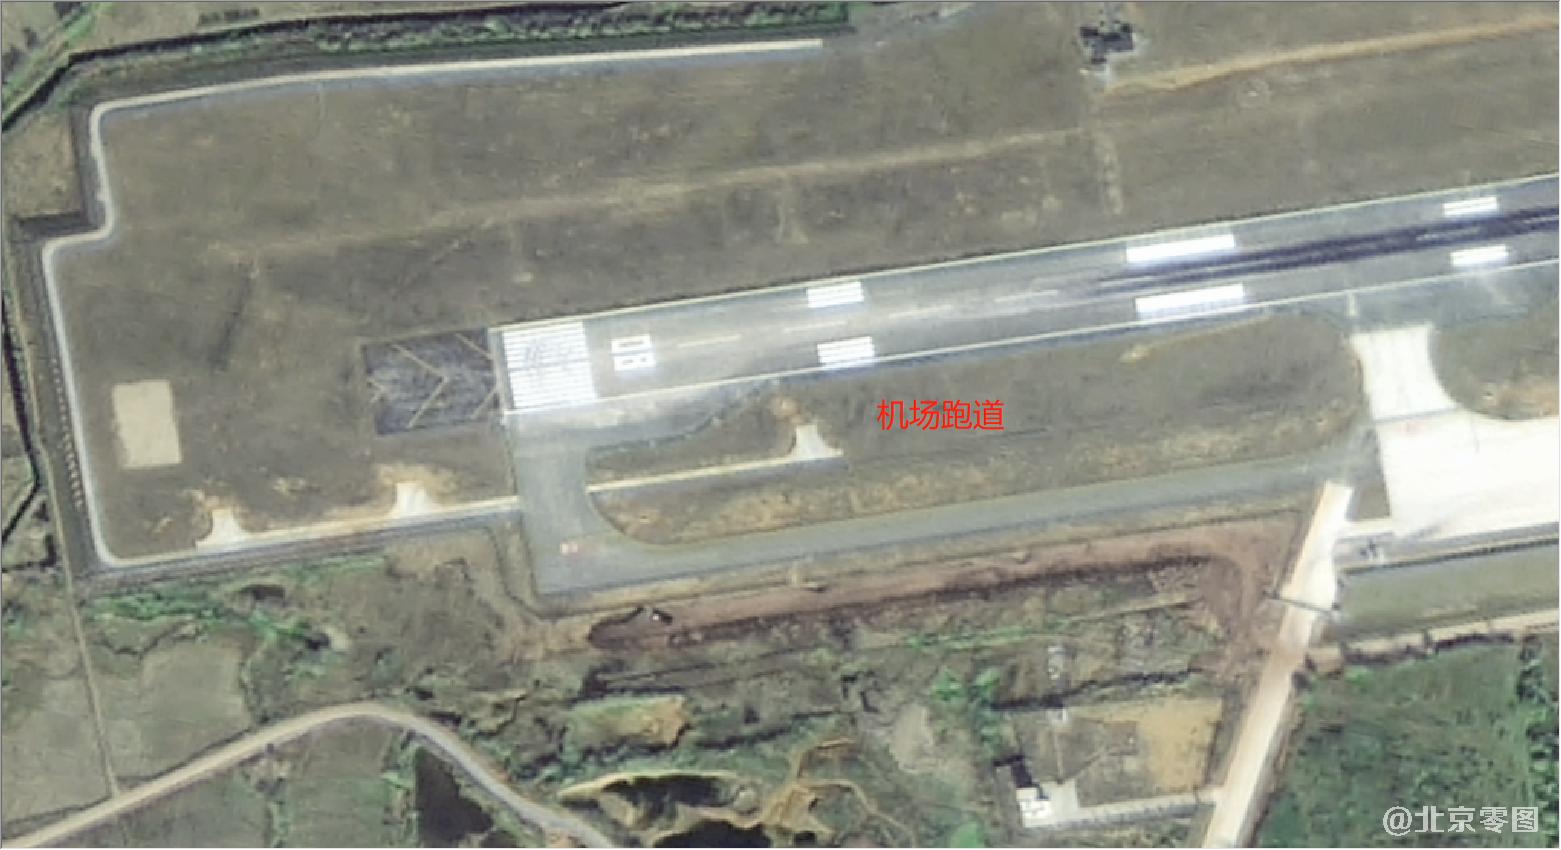 0.8米高分二号卫星拍摄的机场卫星图